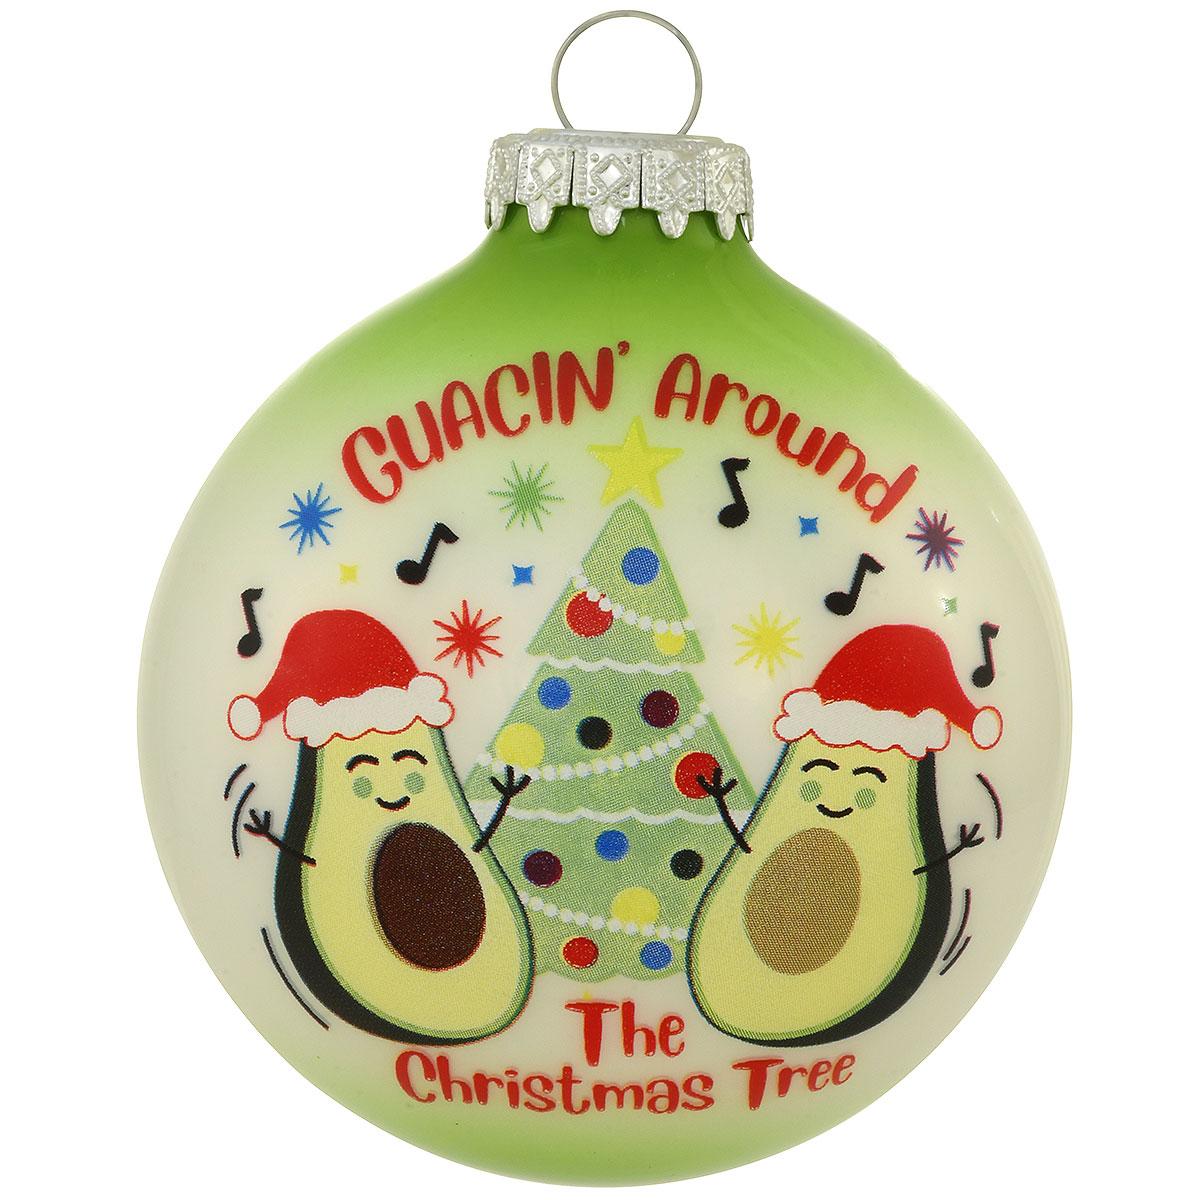 Guacin’ Around The Christmas Tree